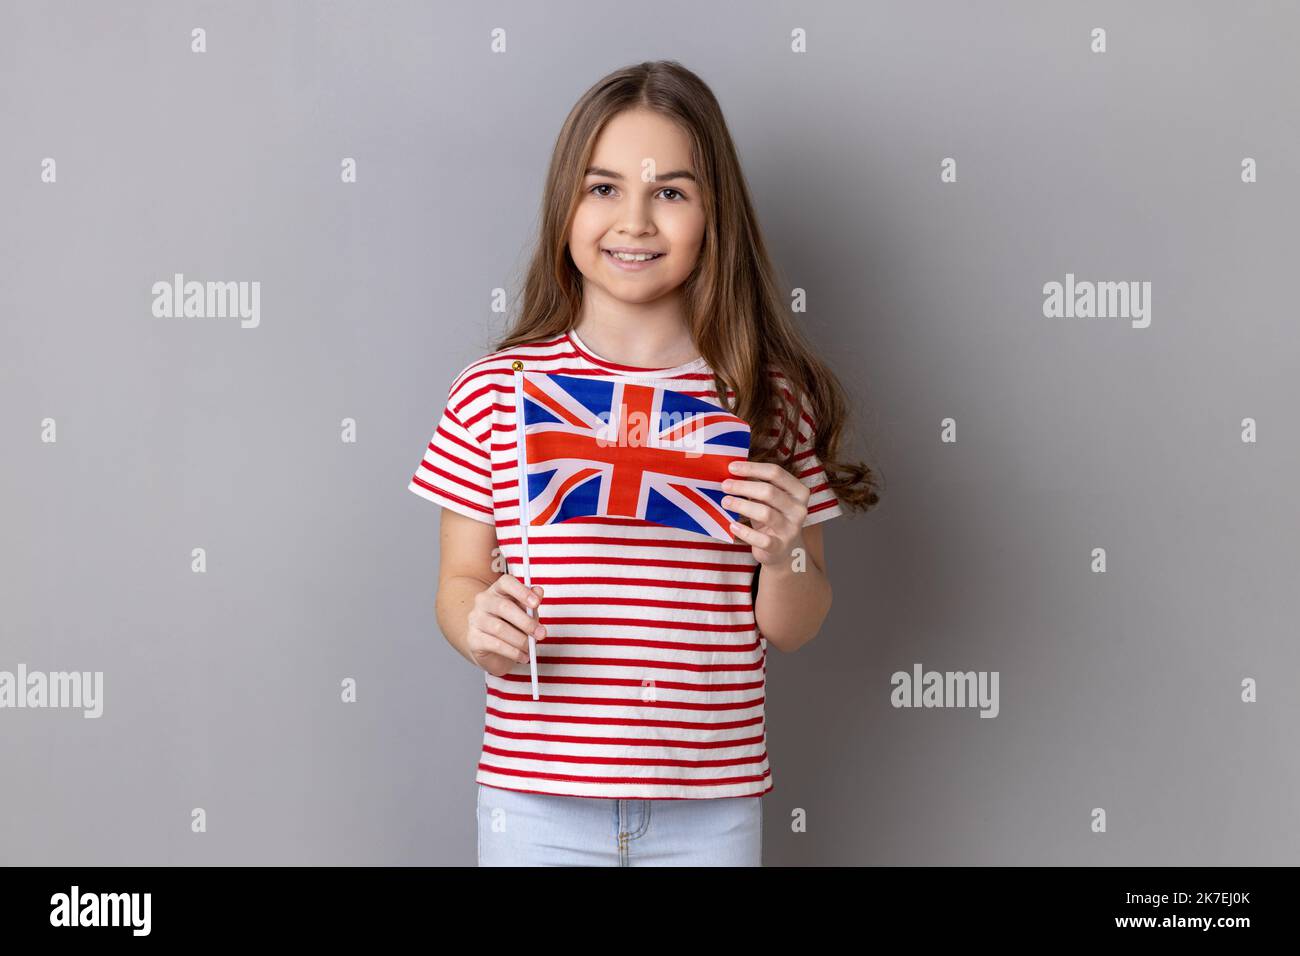 Bandera británica. Retrato de encantadora niña sonriente con camiseta a rayas sosteniendo la bandera del Reino Unido mirando la cámara con expresión positiva. Estudio de interior grabado aislado sobre fondo gris Foto de stock